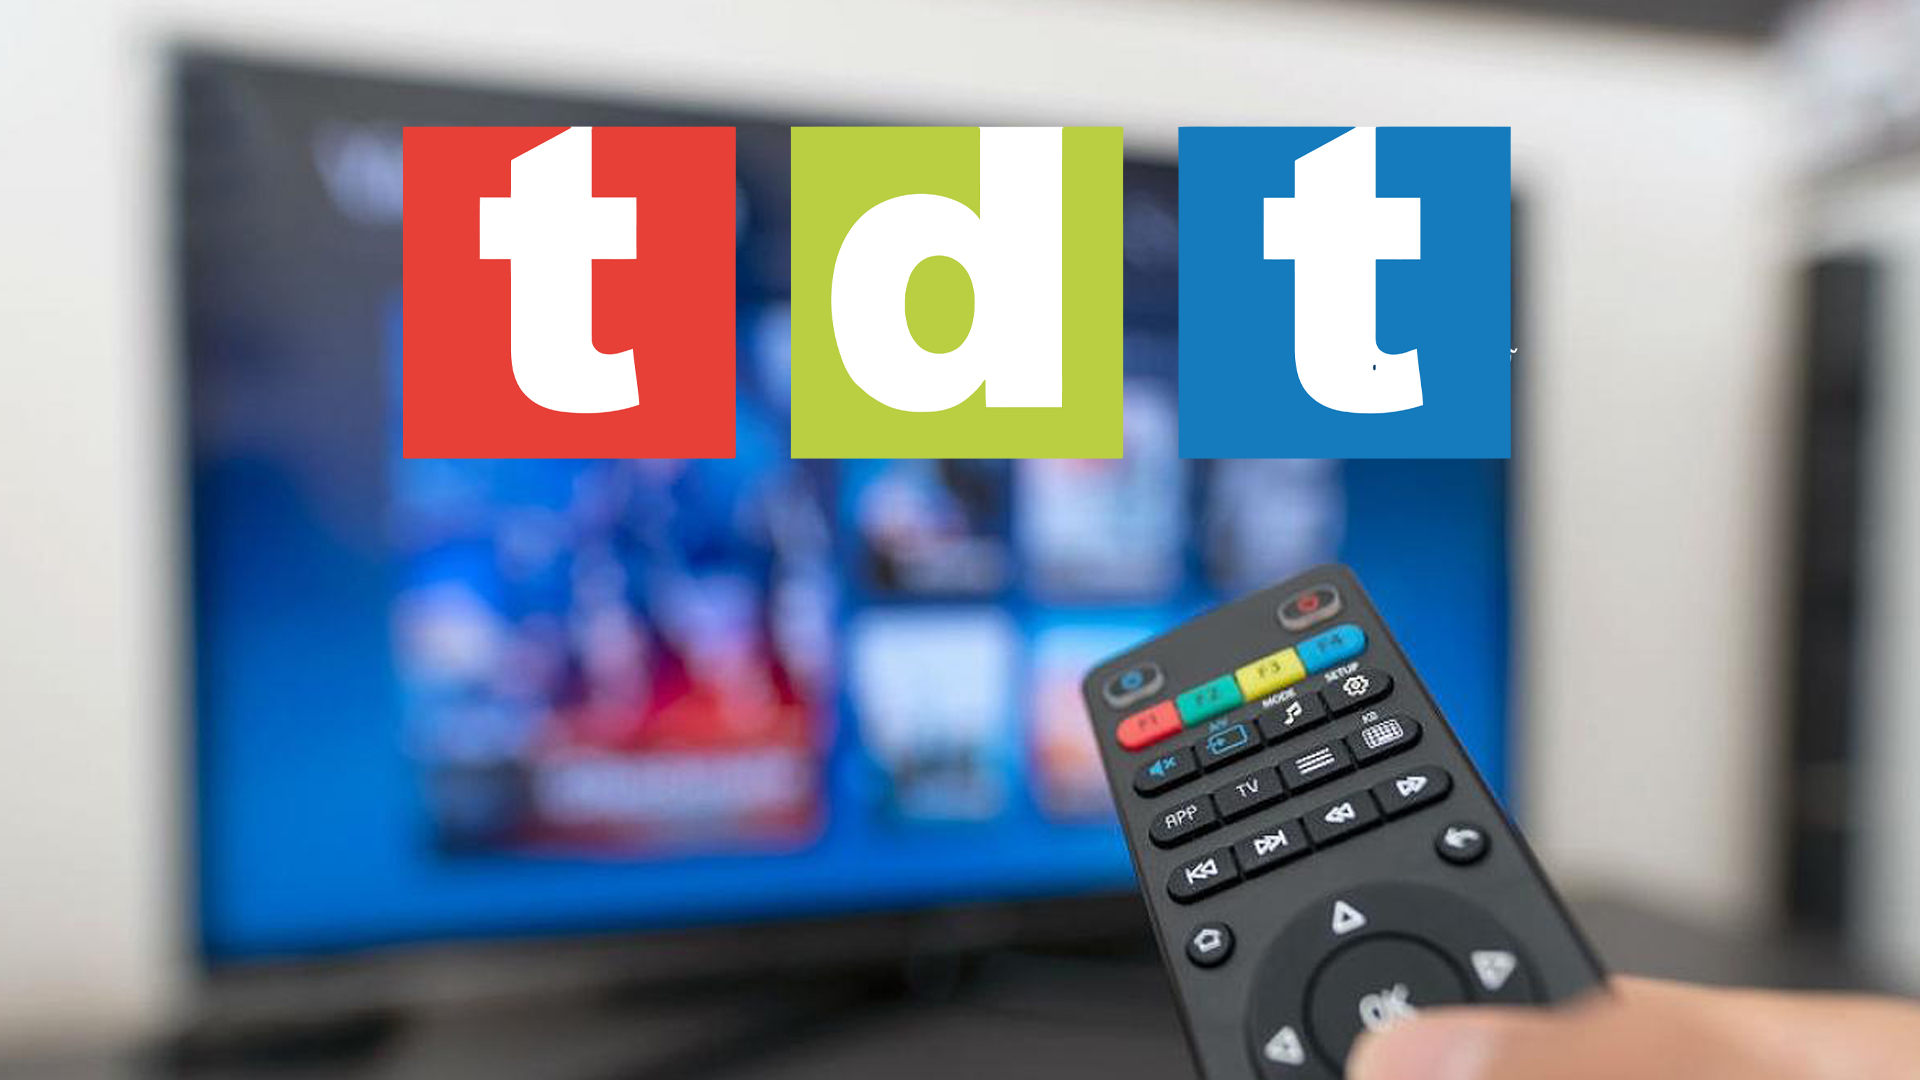 La TDT 4K para Smart TV compatibles ya tiene fecha de estreno en España